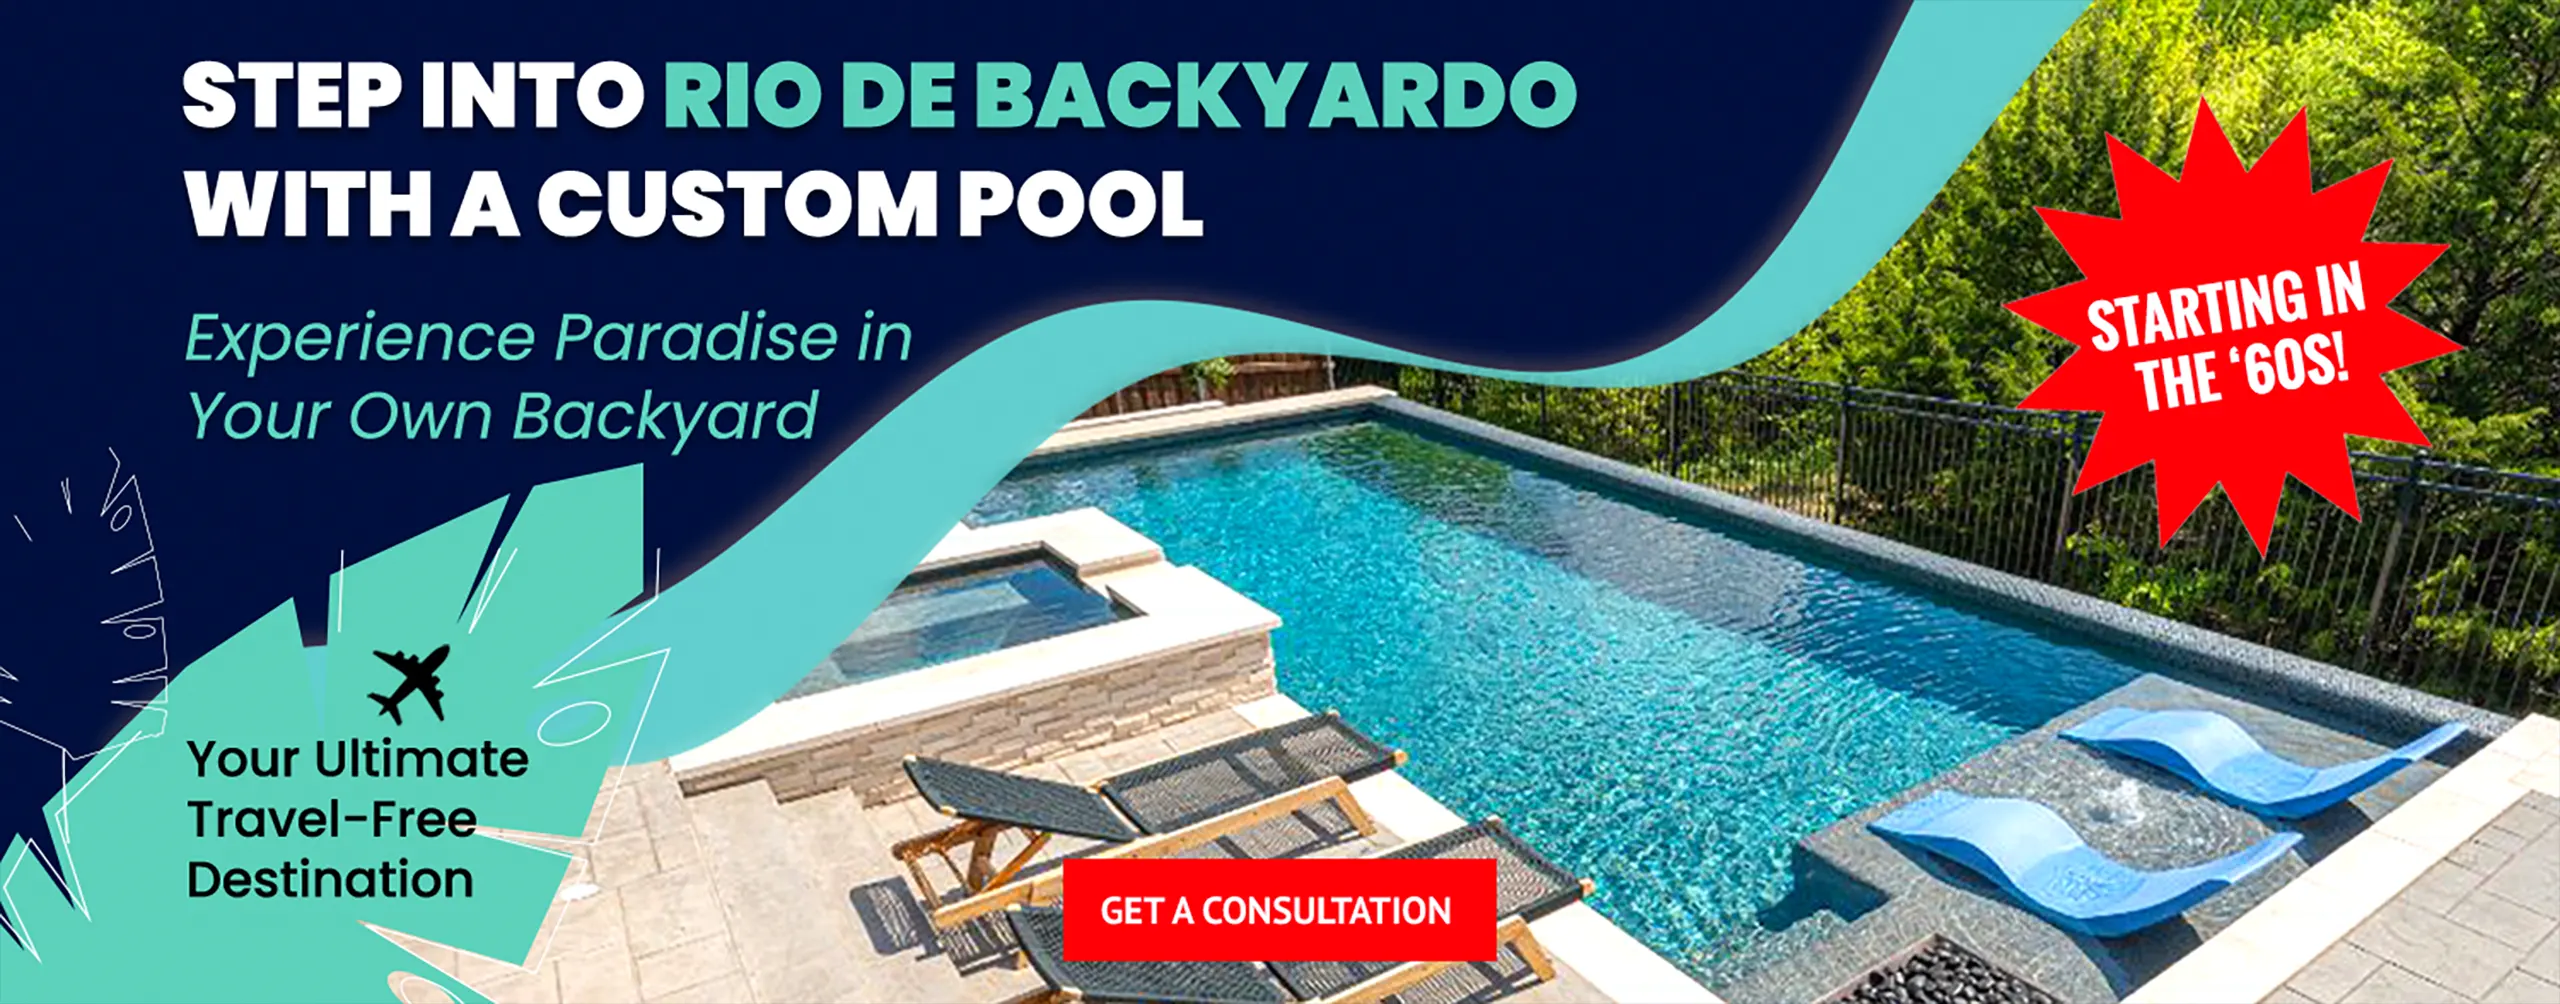 Step Into Rio de Backyardo with a Custom Pool